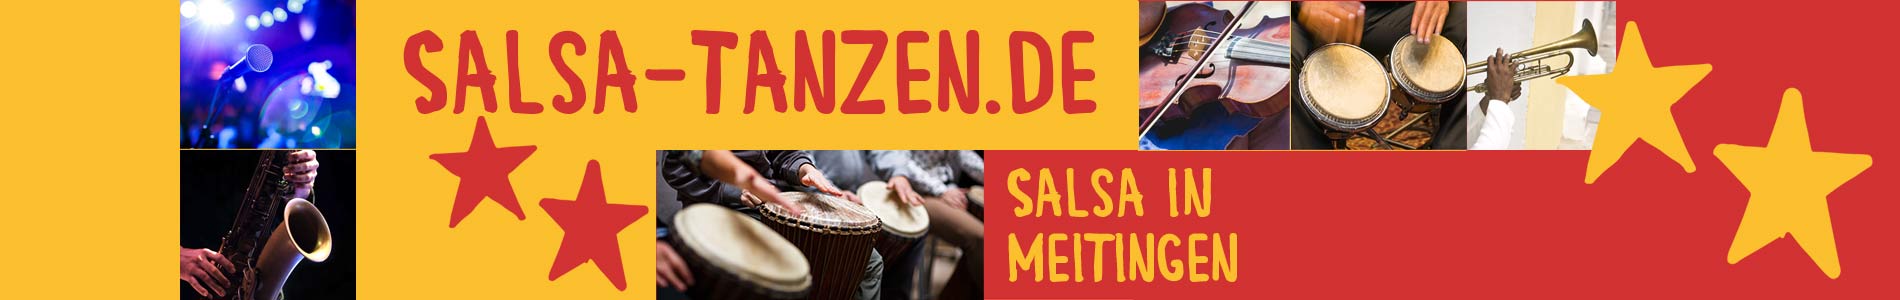 Salsa in Meitingen – Salsa lernen und tanzen, Tanzkurse, Partys, Veranstaltungen